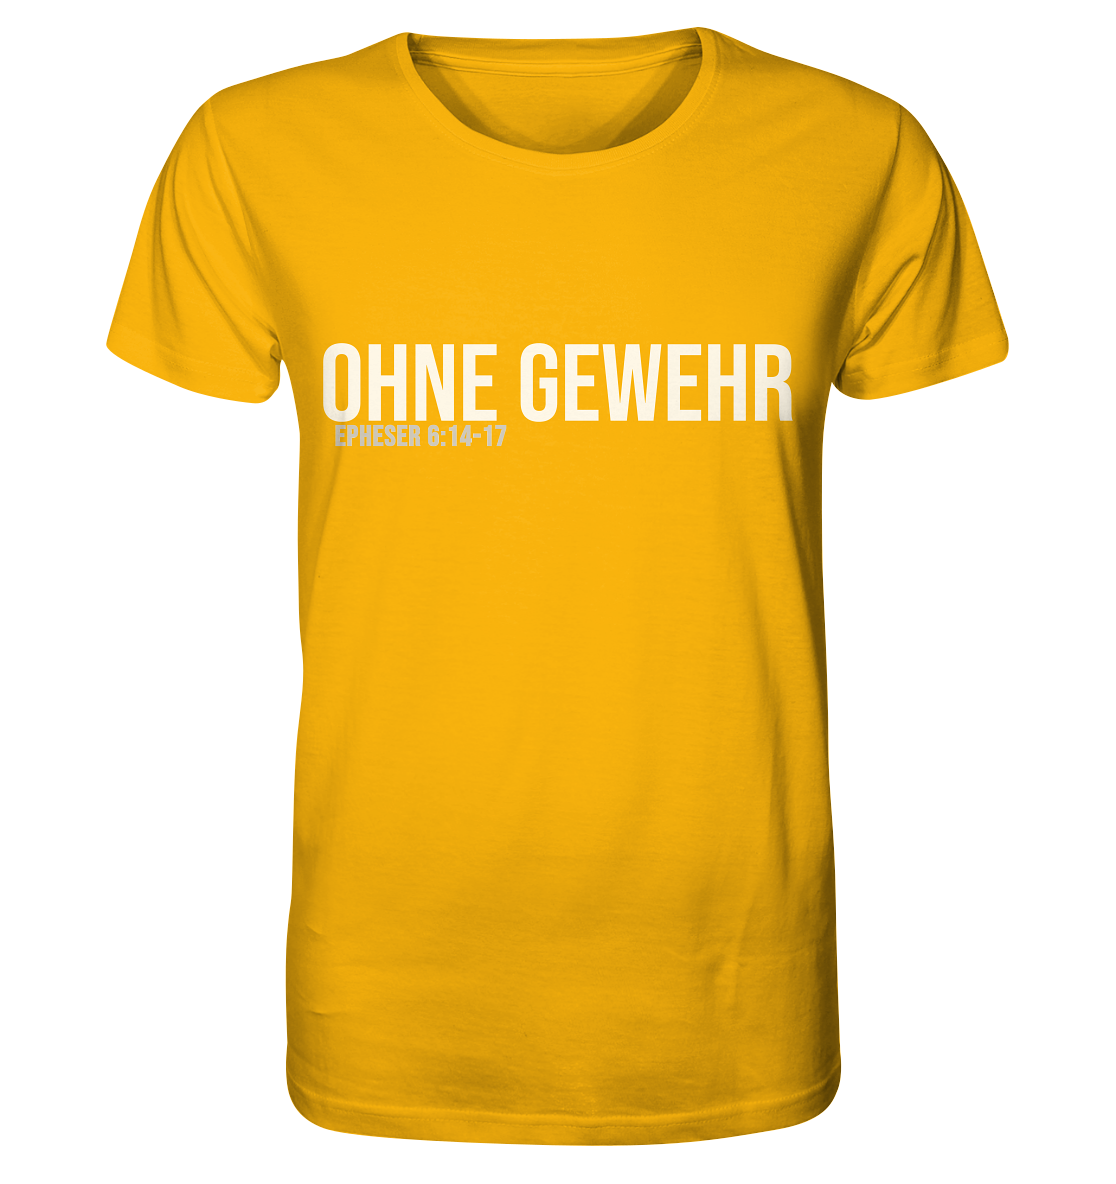 OHNE GEWEHR - weiß auf bunt - Organic Shirt